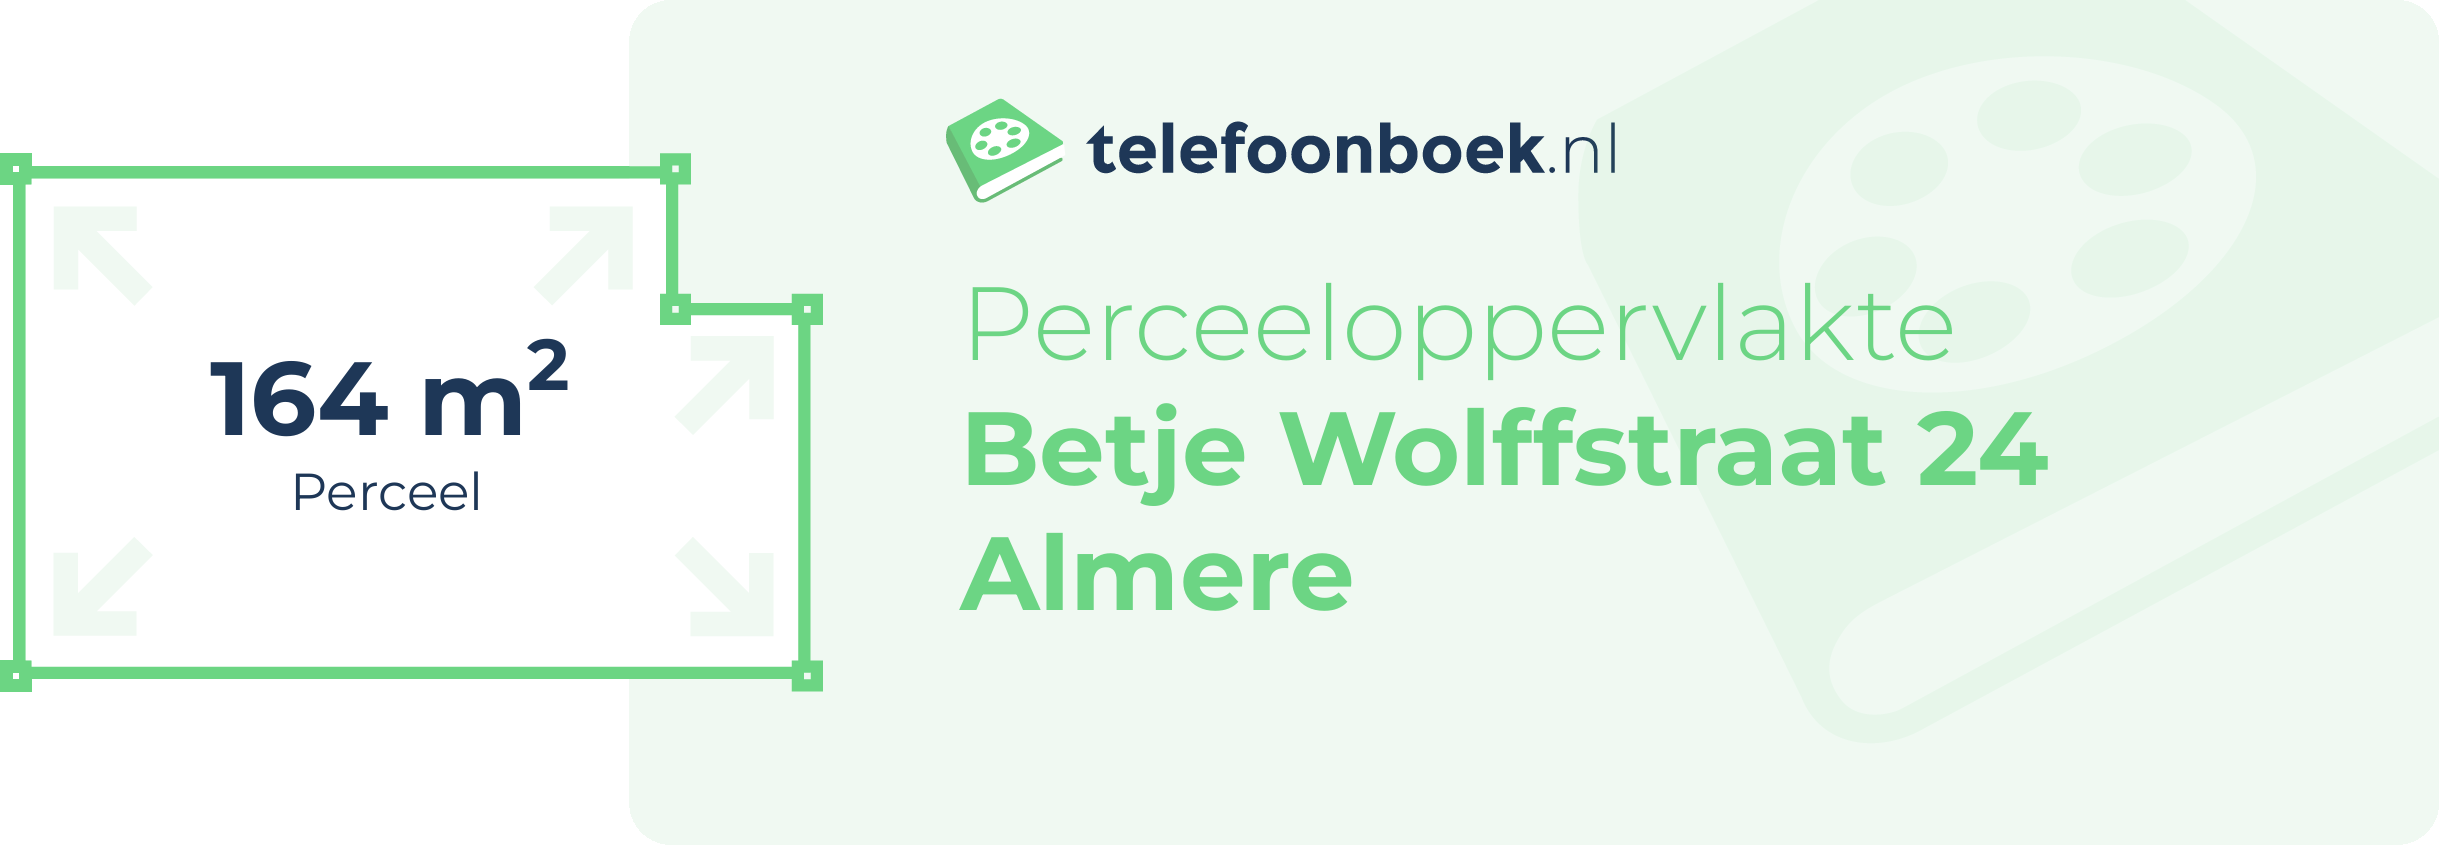 Perceeloppervlakte Betje Wolffstraat 24 Almere